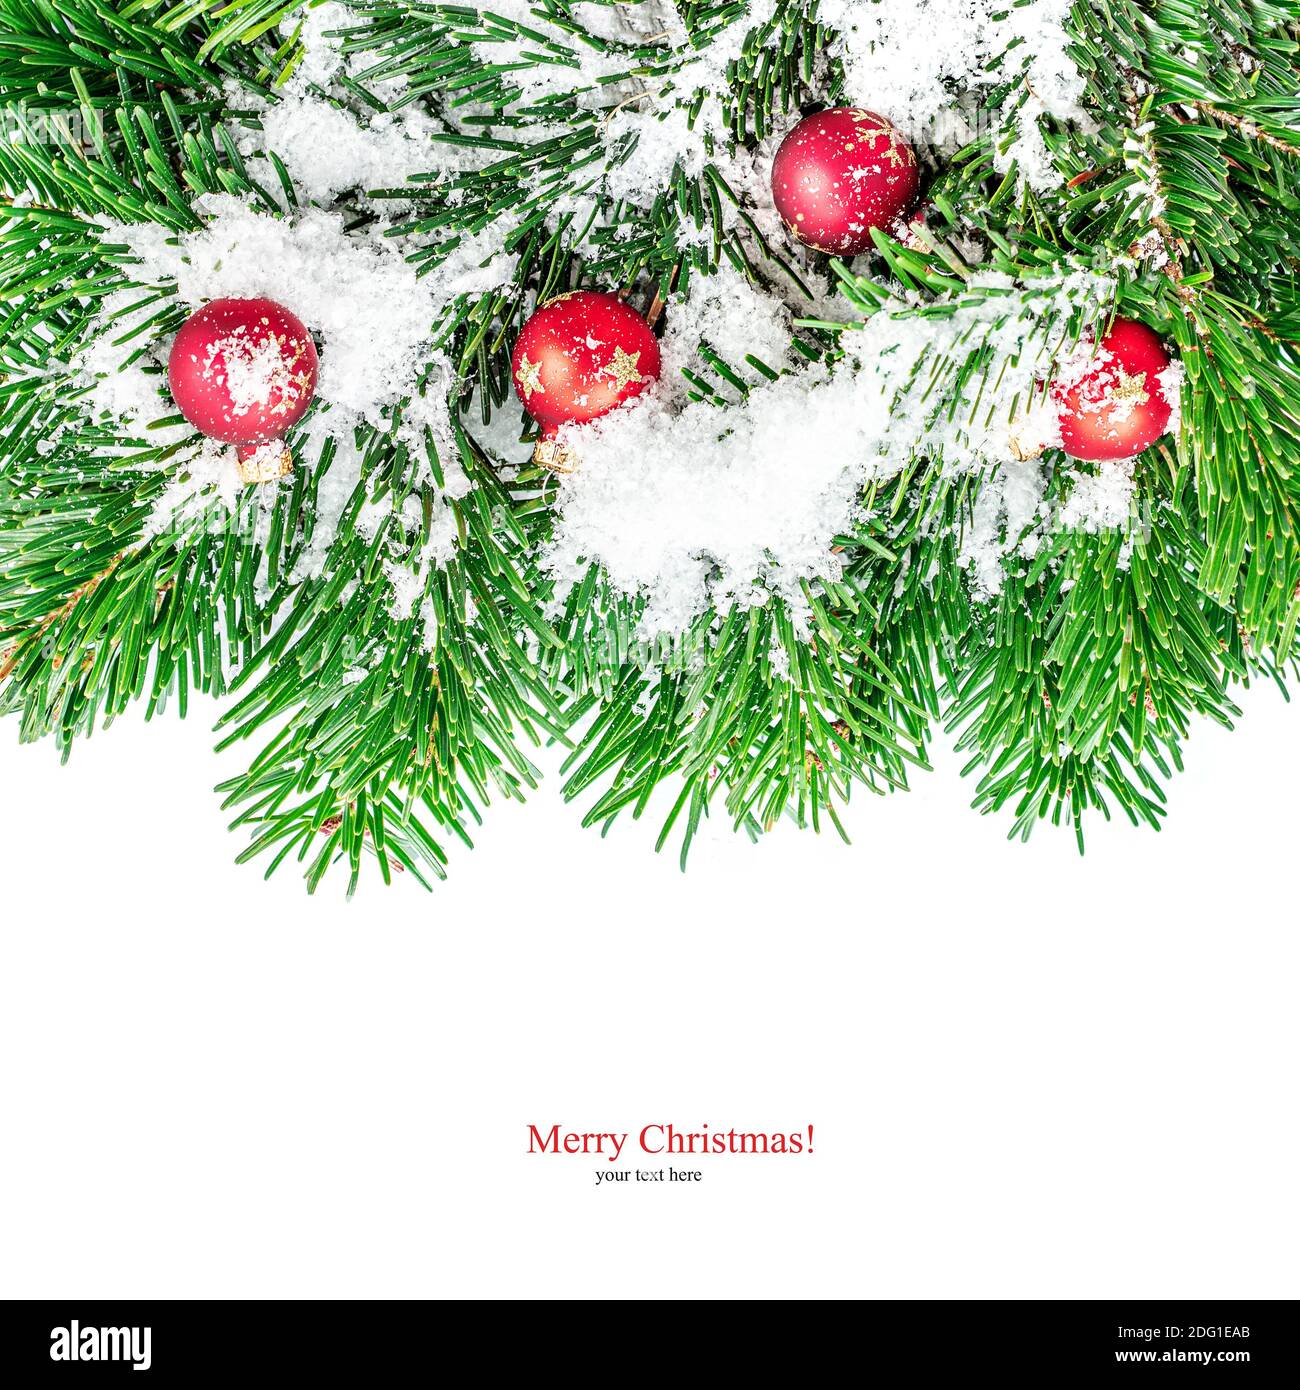 Confine albero di Natale con decorazioni per le vacanze, palline rosse e neve. Simboli di Natale isolati su sfondo bianco. Foto Stock